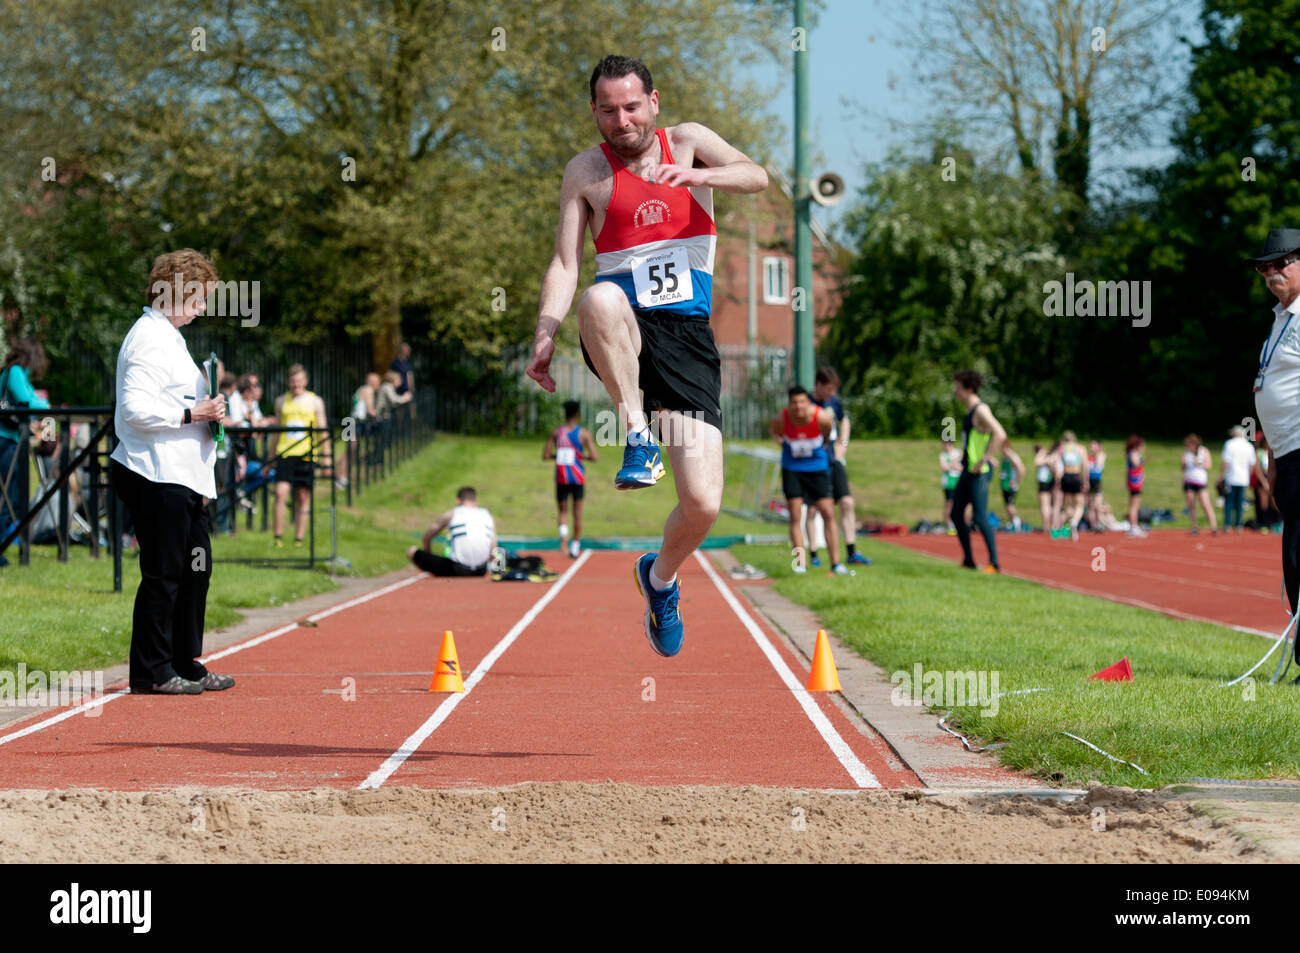 Leichtathletik, Konkurrent im Männer Triple jump Wettbewerb auf Vereinsebene, UK Stockfoto